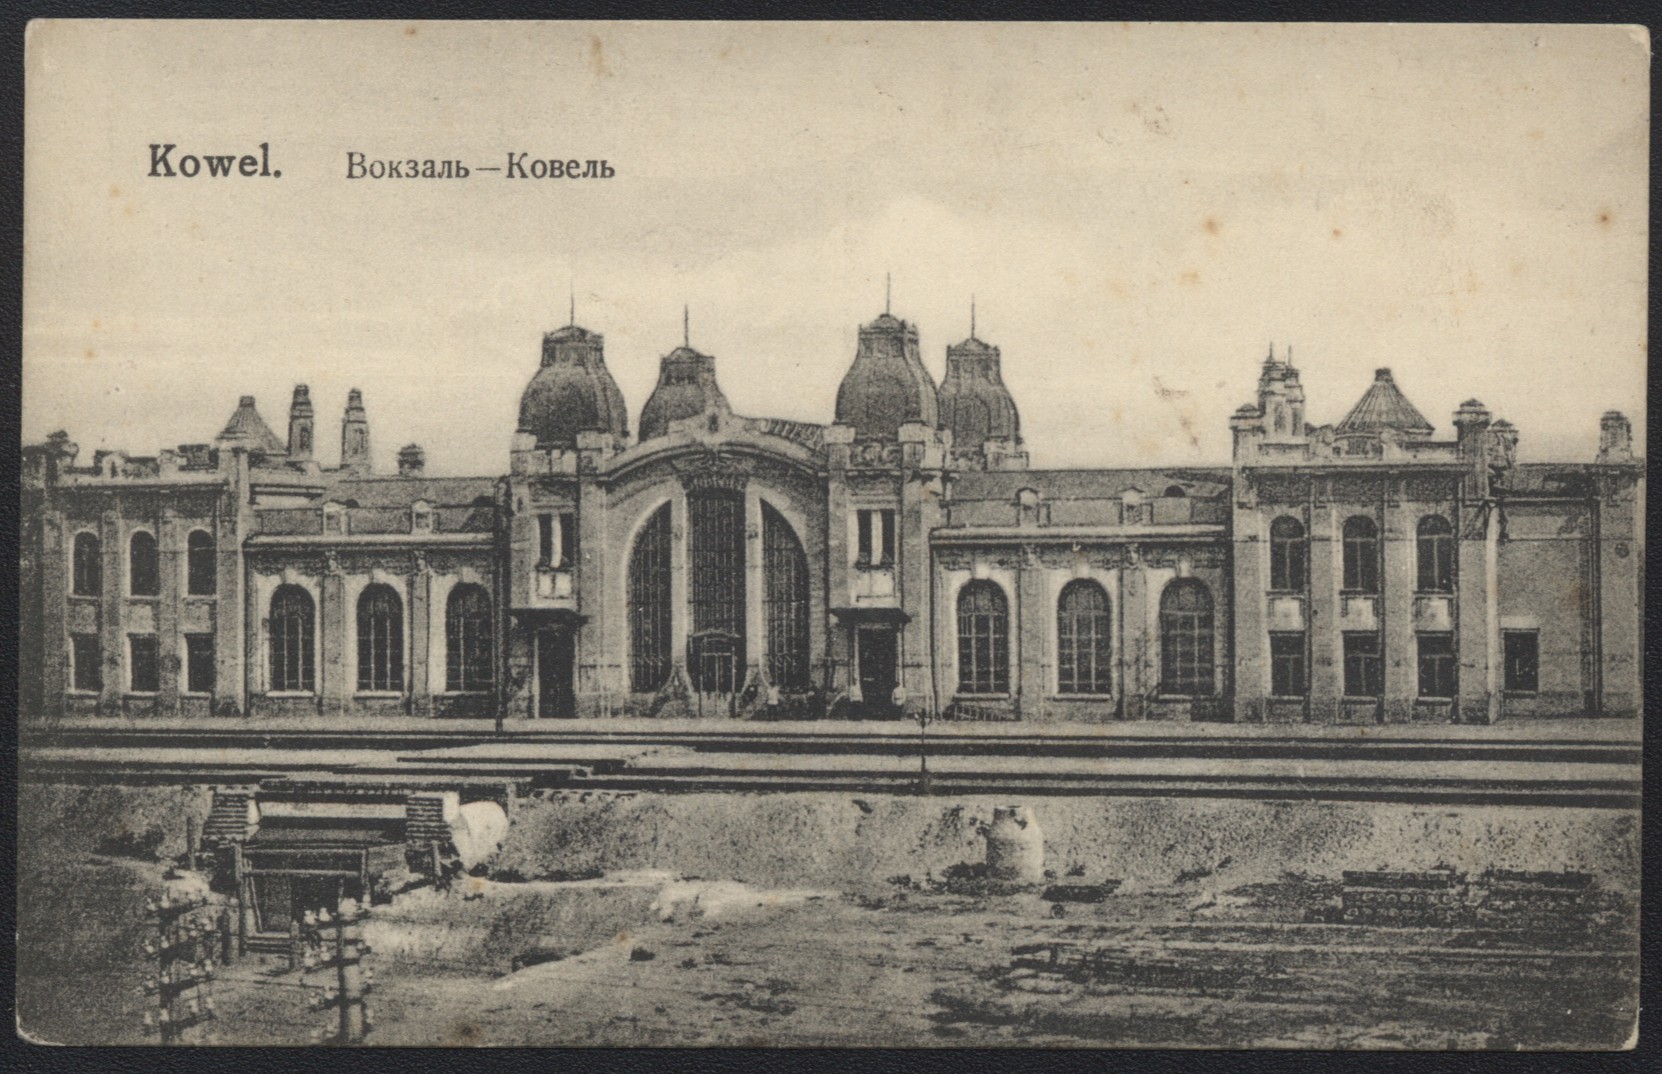 Ковельський вокзал, зображення 1920 р.